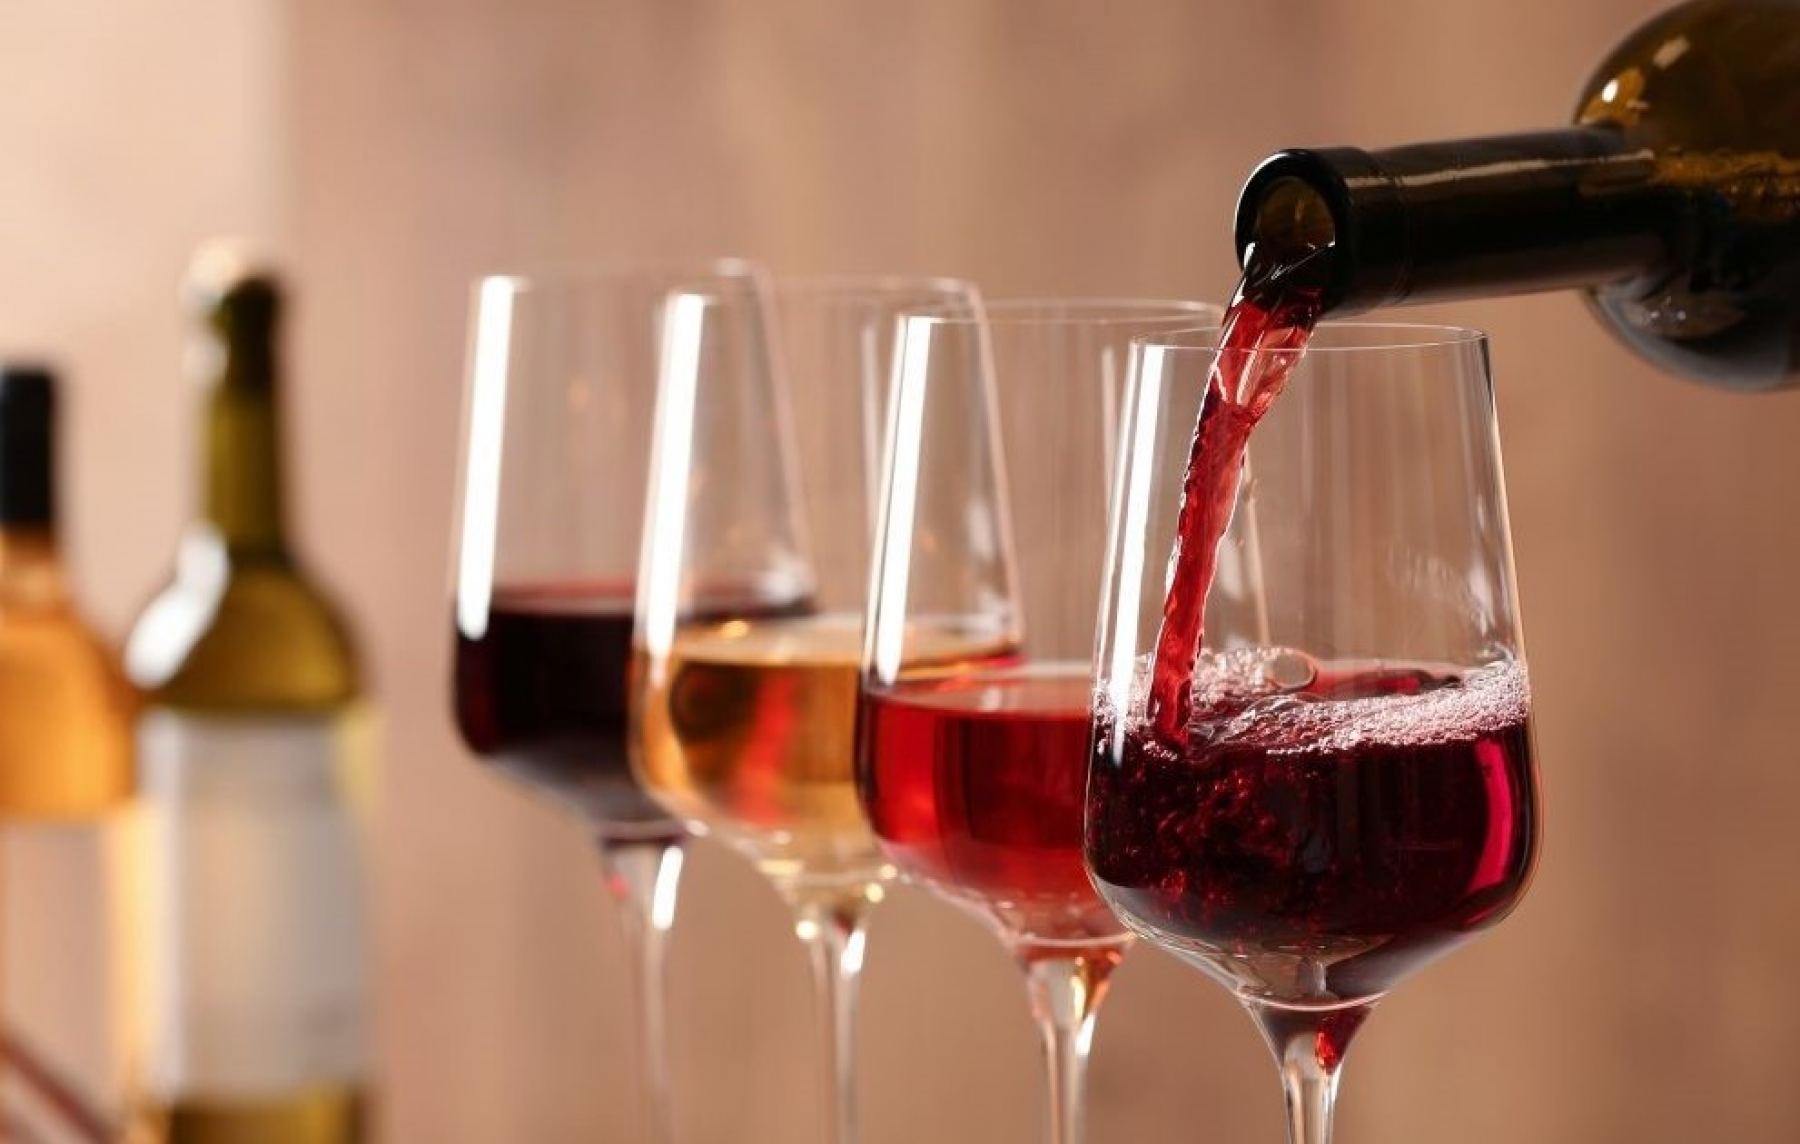 Λαμία: Γρήγορες και αξιόπιστες αναλύσεις κρασιού και λαδιού!